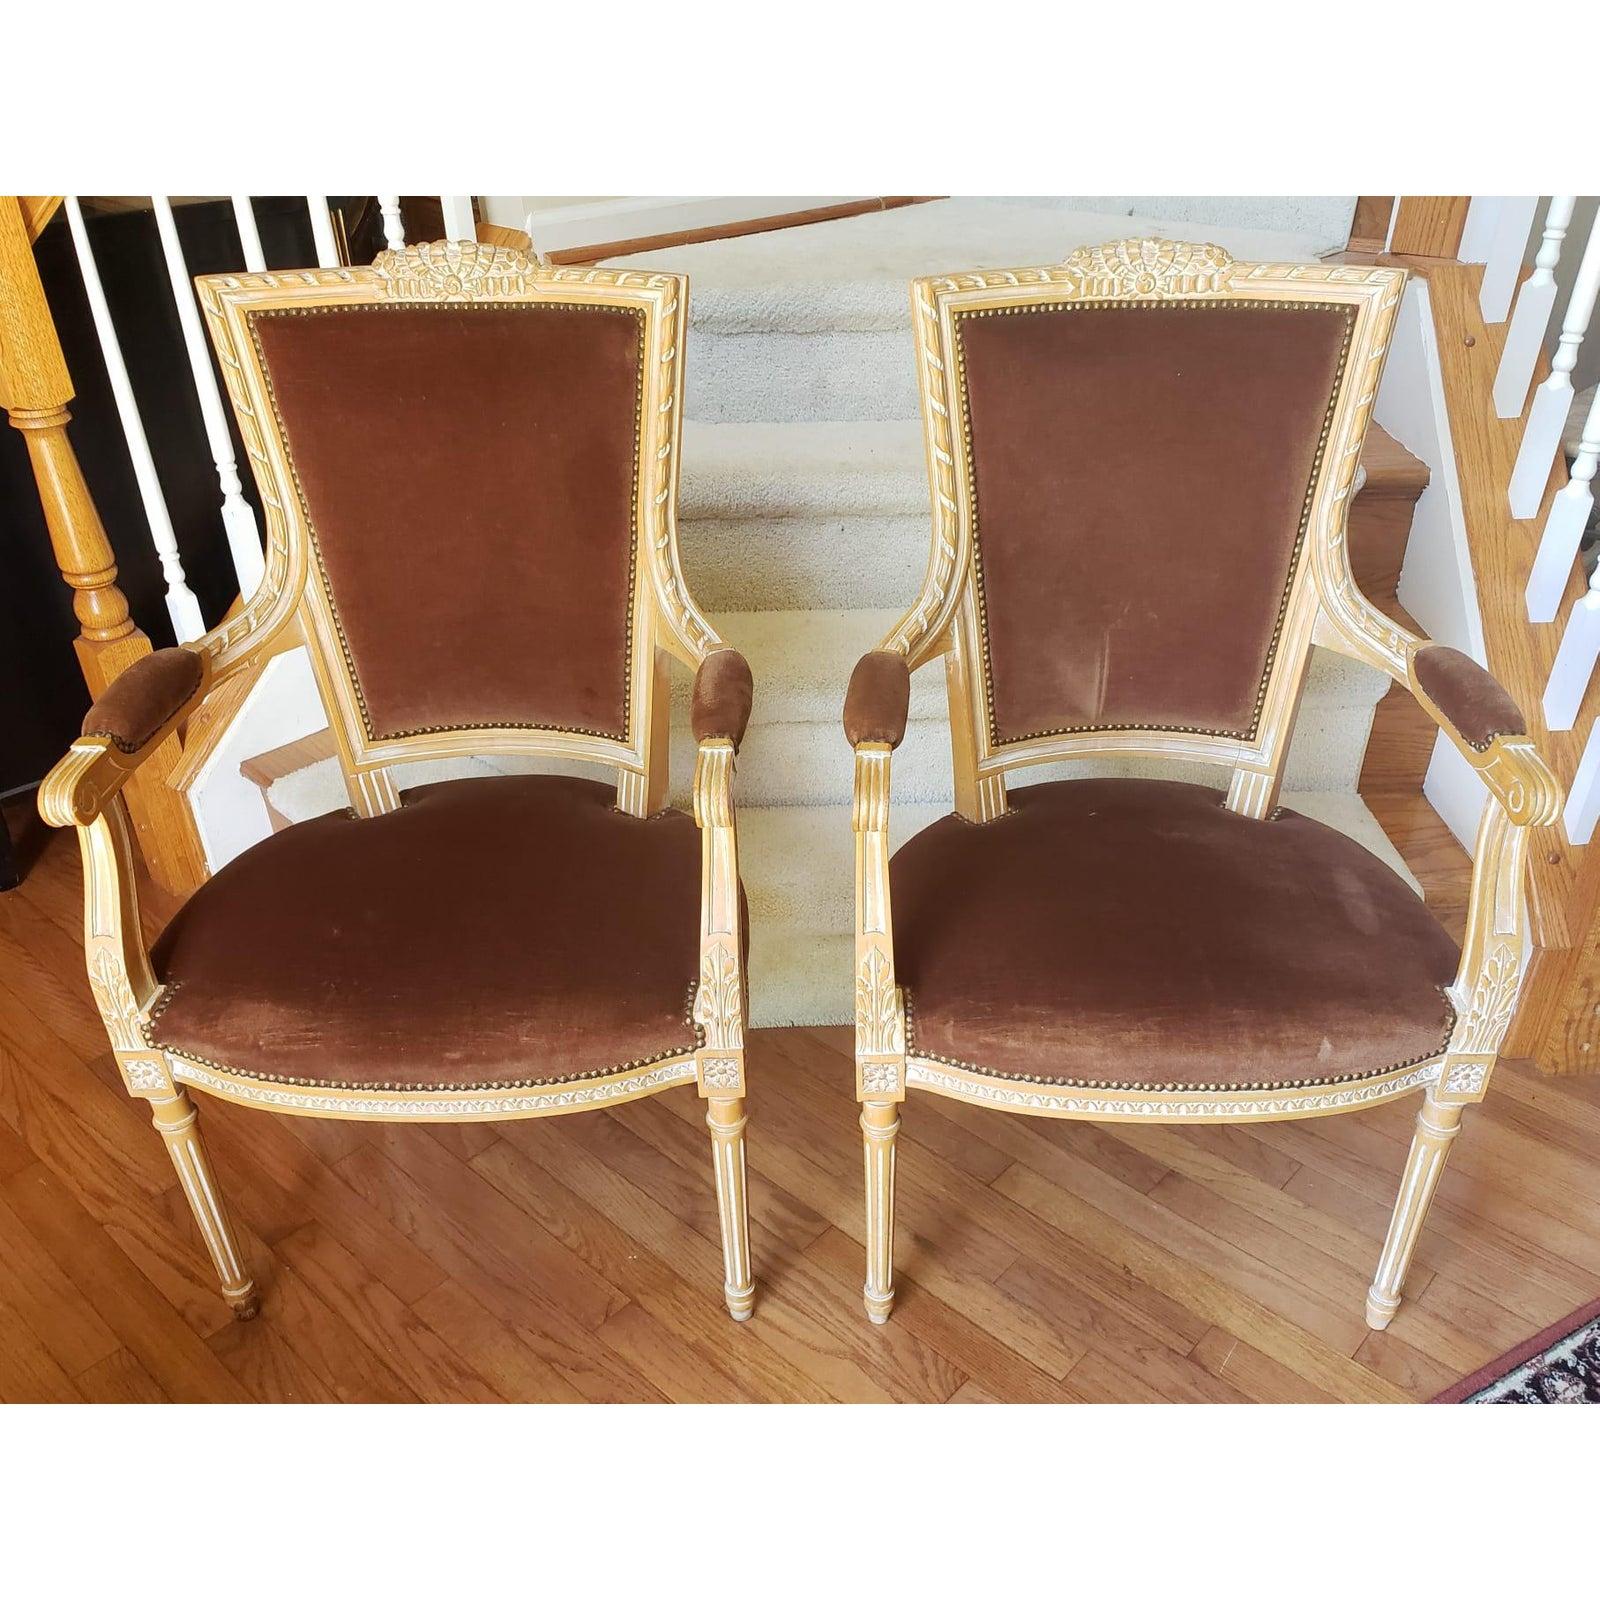 Fabuleuse paire vintage de fauteuils Empire suédois de style gustavien avec de véritables sculptures gustaviennes. La sellerie en velours marron foncé est en excellent état. Les chaises mesurent 24